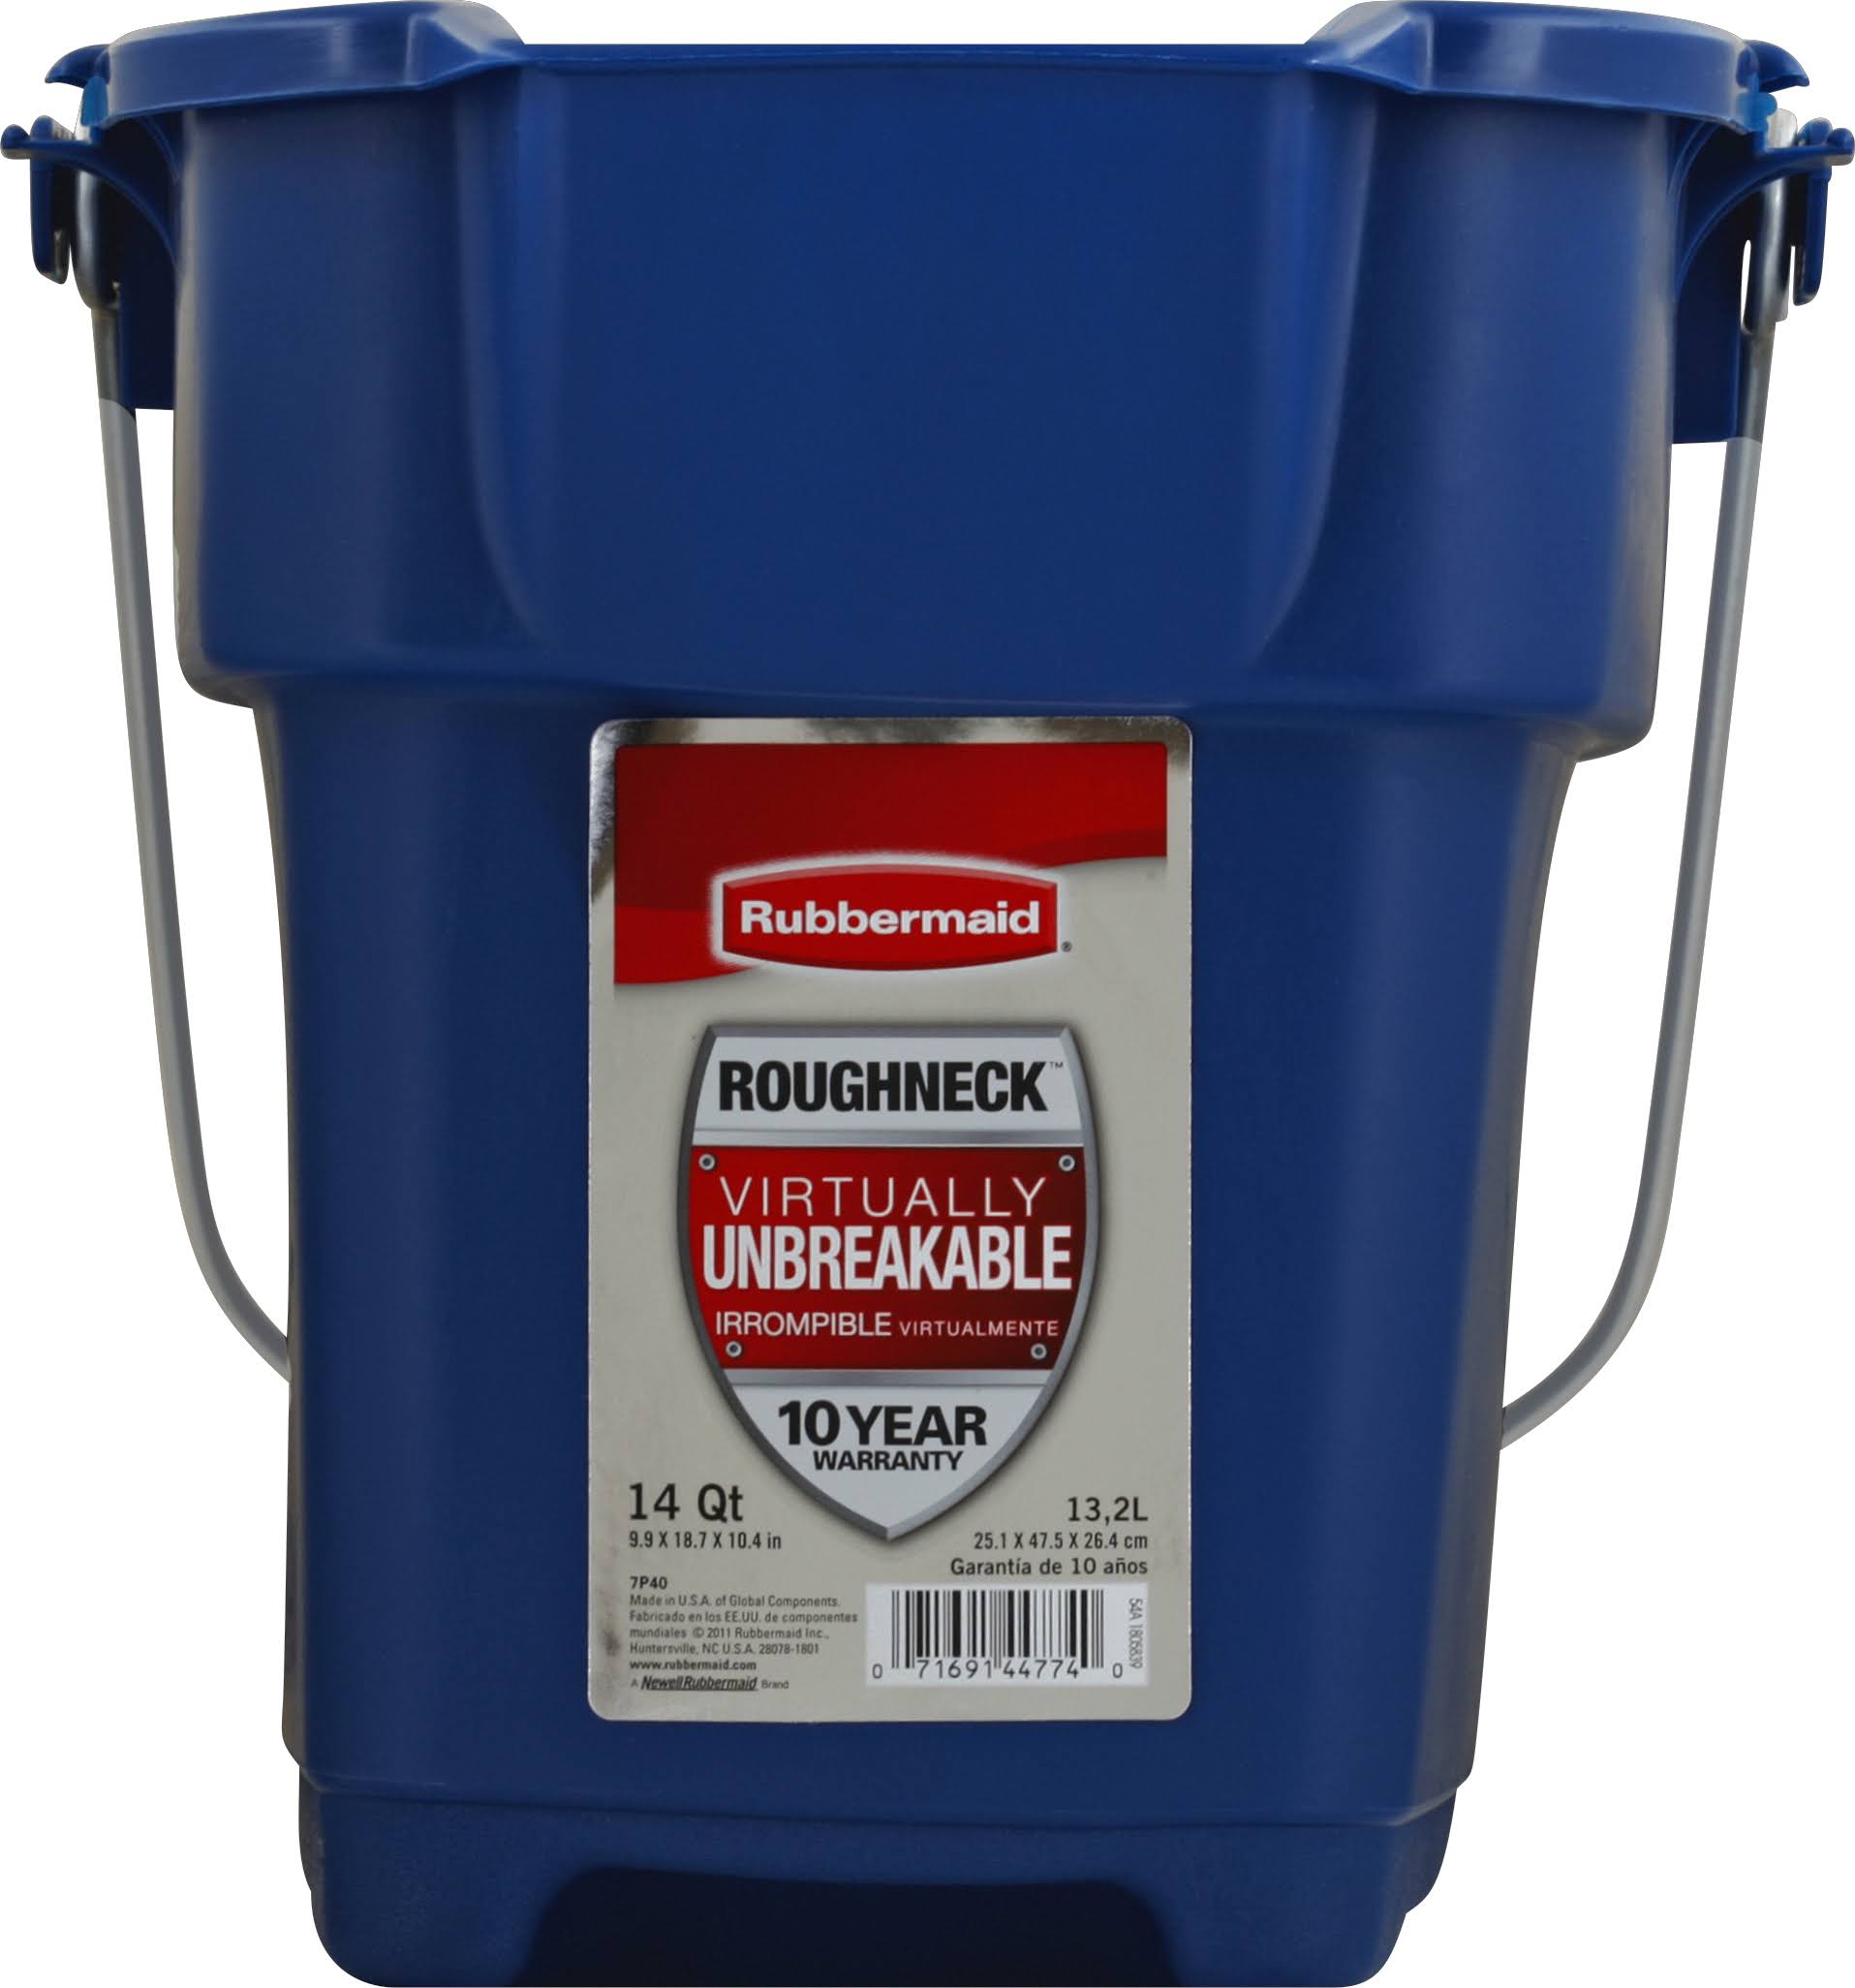 Rubbermaid Roughneck Rectangle Bucket - 14qt, Blue